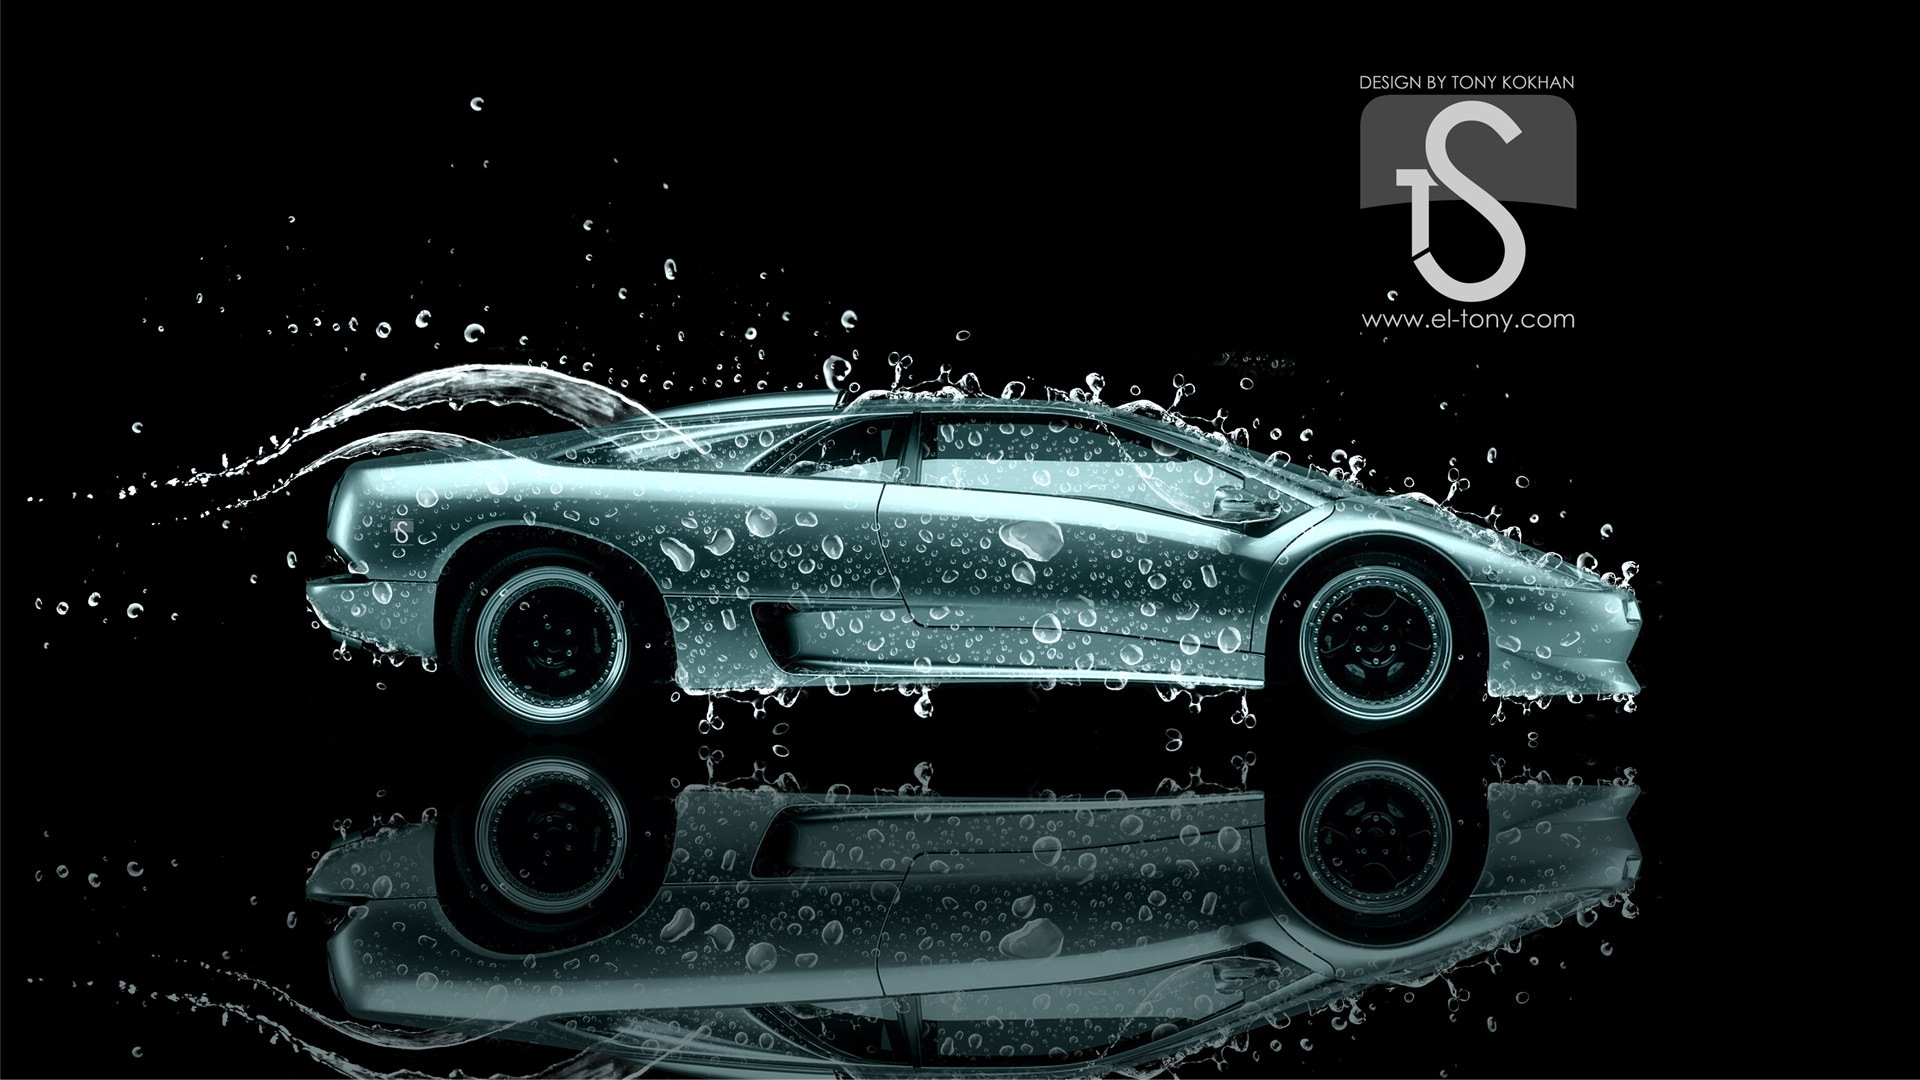 Les gouttes d'eau splash, beau fond d'écran de conception créative de voiture #27 - 1920x1080